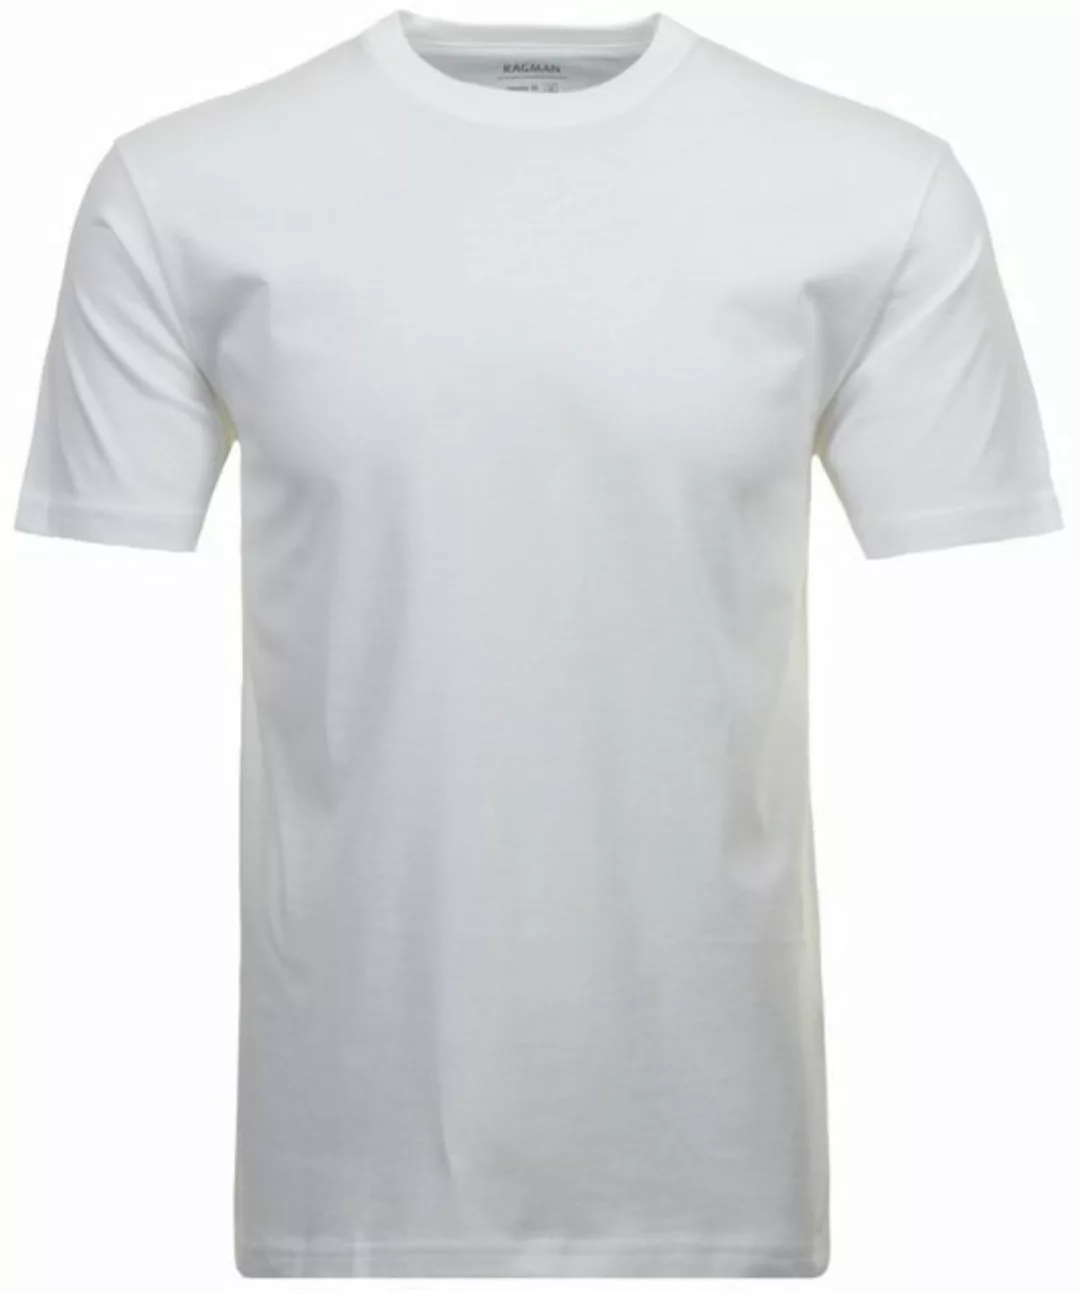 RAGMAN T-Shirt (Packung) günstig online kaufen